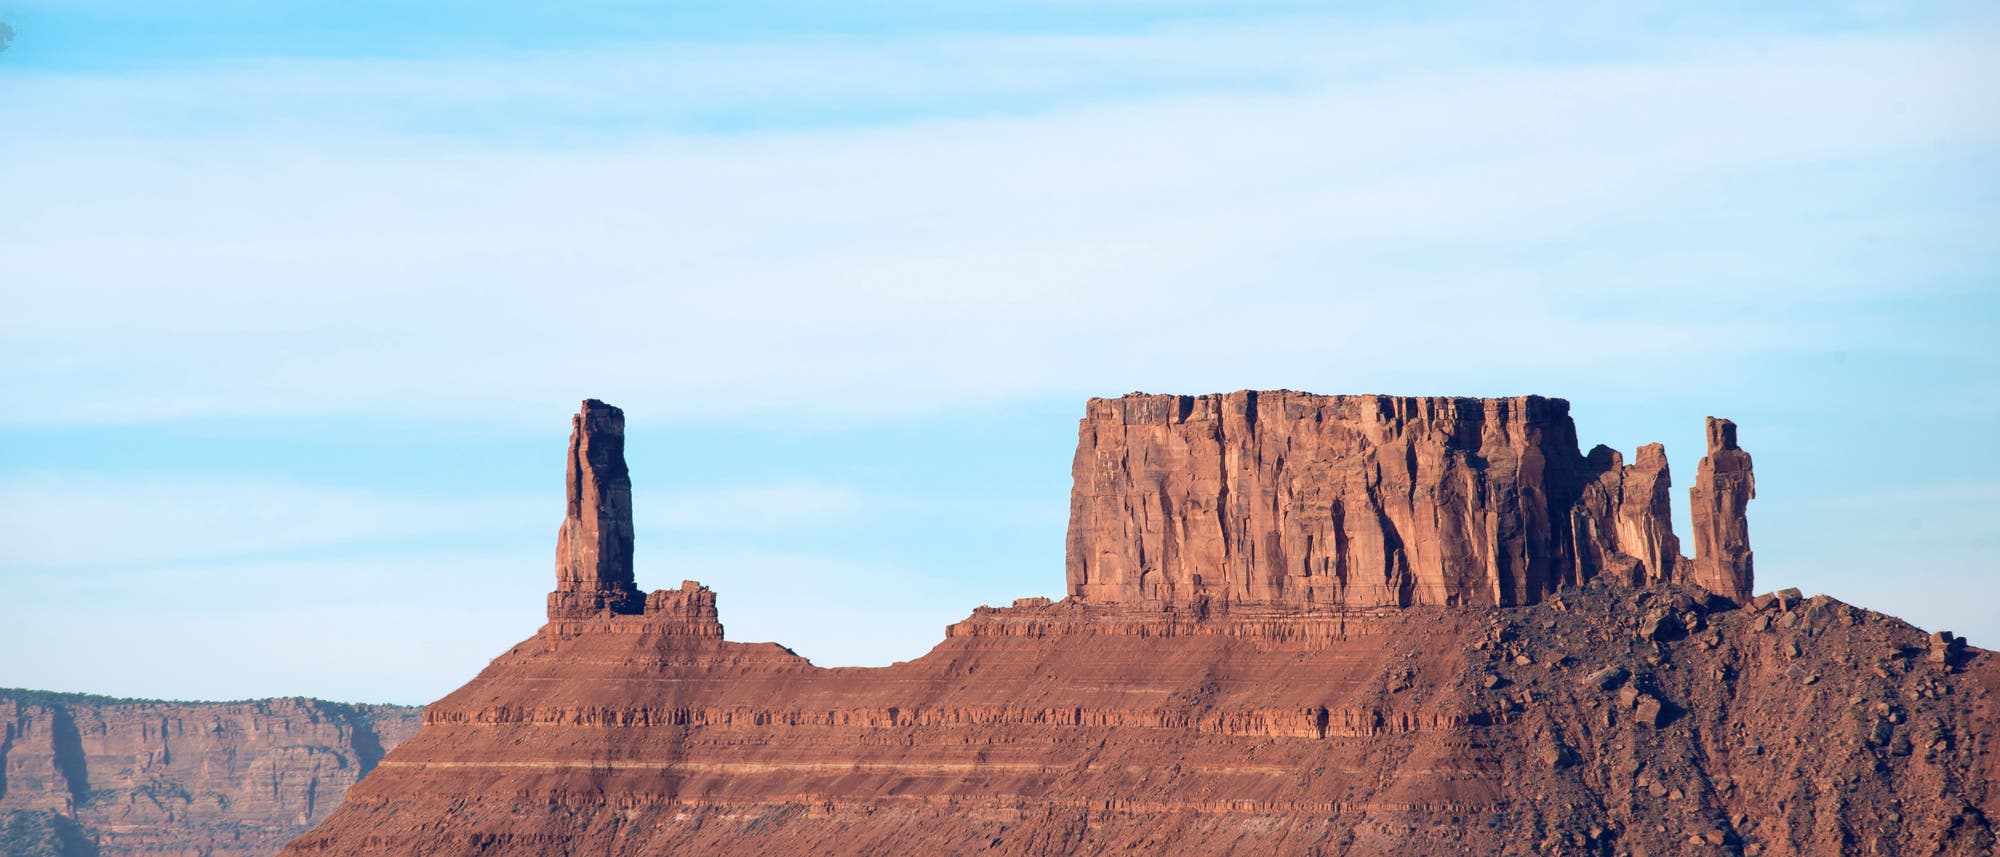 Der 120 Meter hohe Castleton Tower in Utah und die benachbarte, als The Rectory bezeichnete Felsformation sind Überreste eines dicken Sandsteinplateaus.